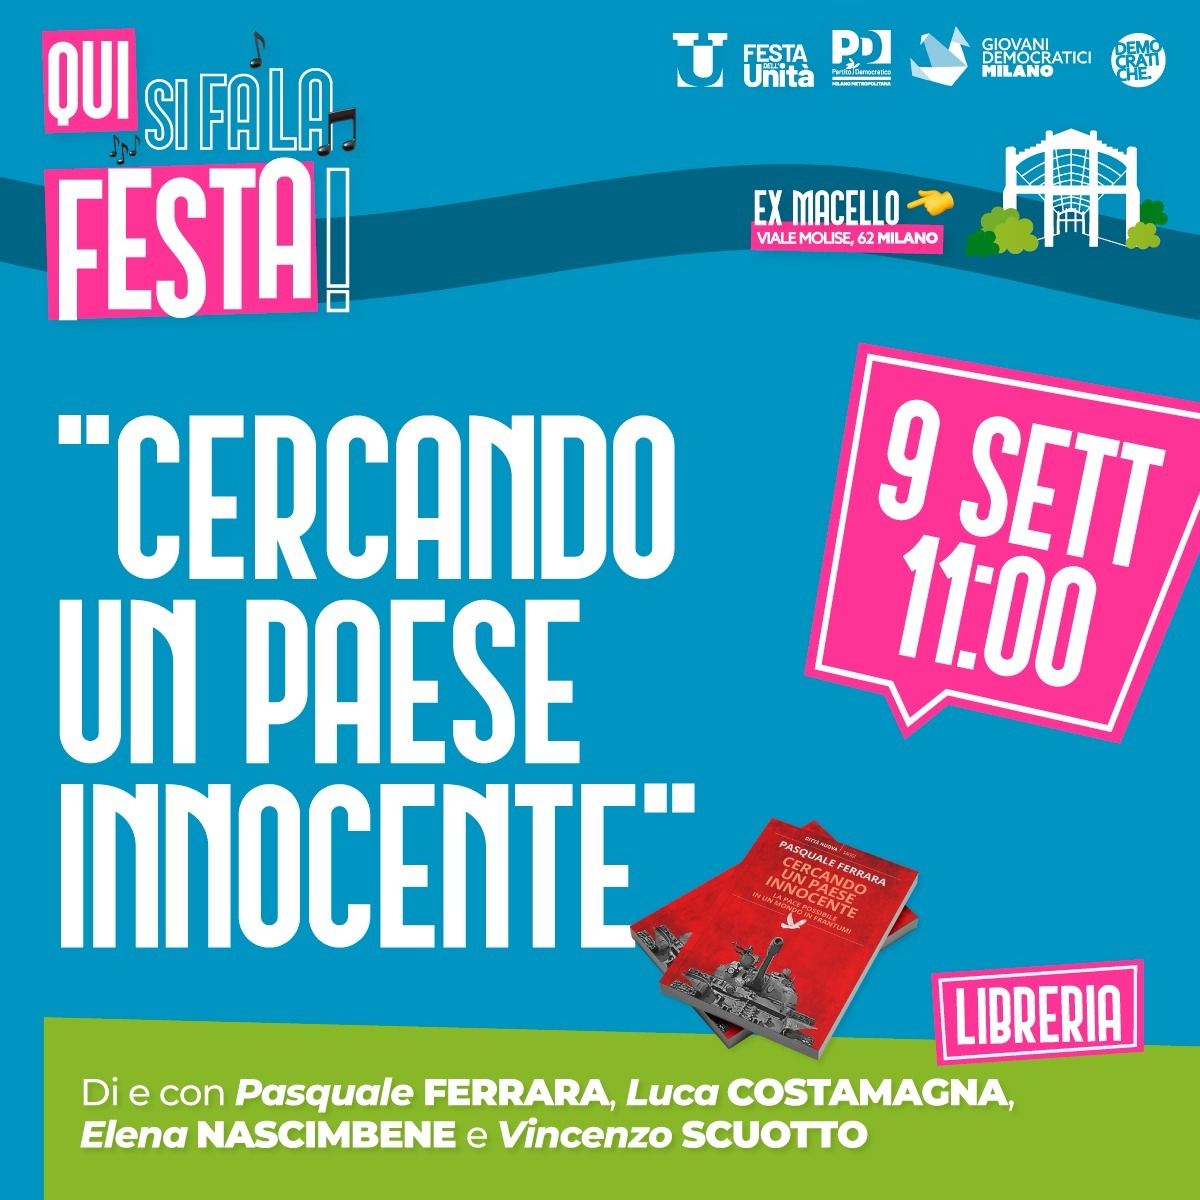 Milano, 9 settembre: Presentazione del libro "Cercando un paese innocente".